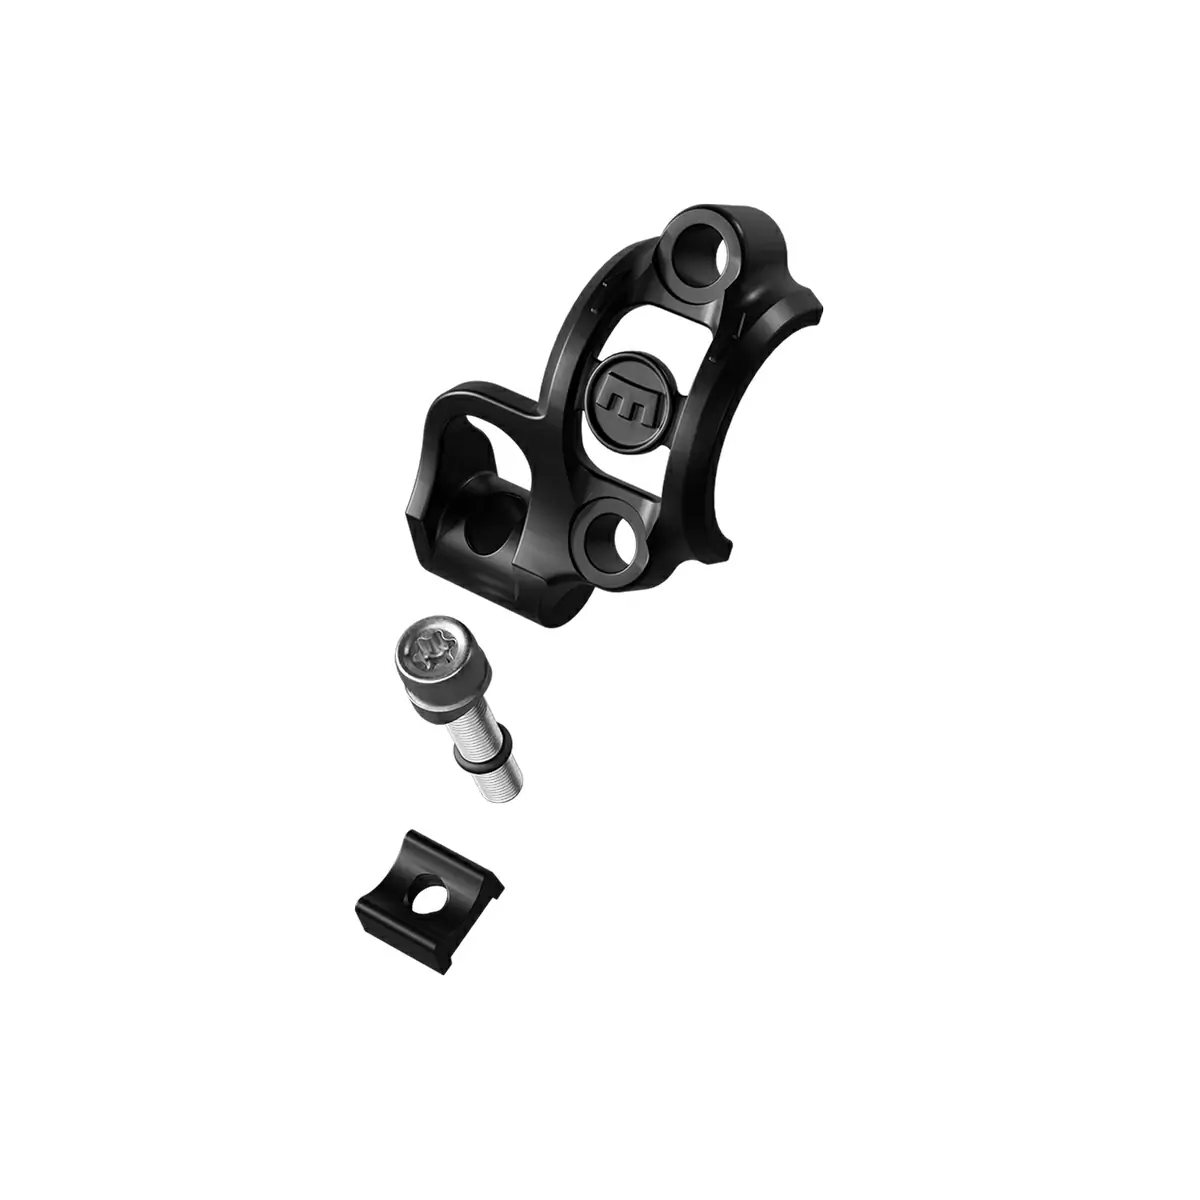 Collier de serrage Shiftmix 3 pour leviers de vitesses SRAM destro nero - image